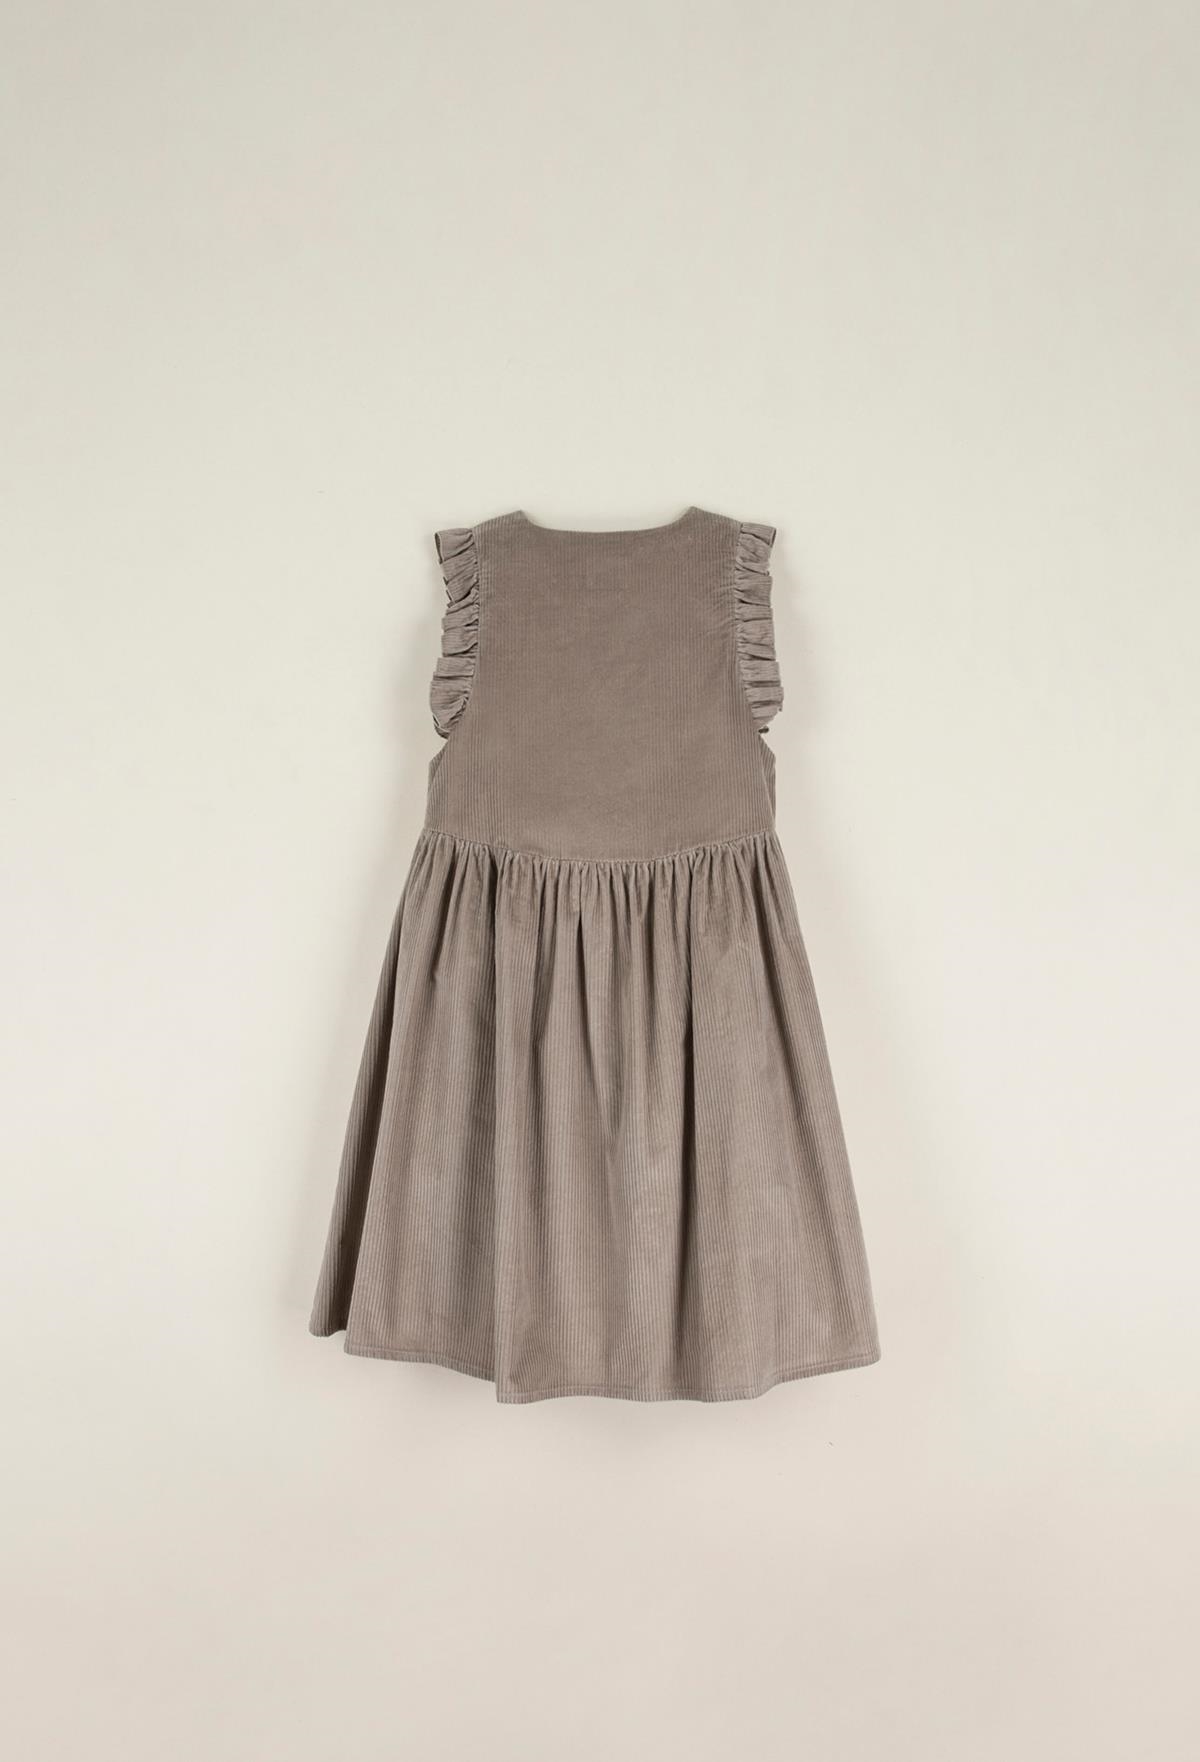 Mod.35.1 Taupe dress with bib | AW22.23 Mod.35.1 Taupe dress with bib